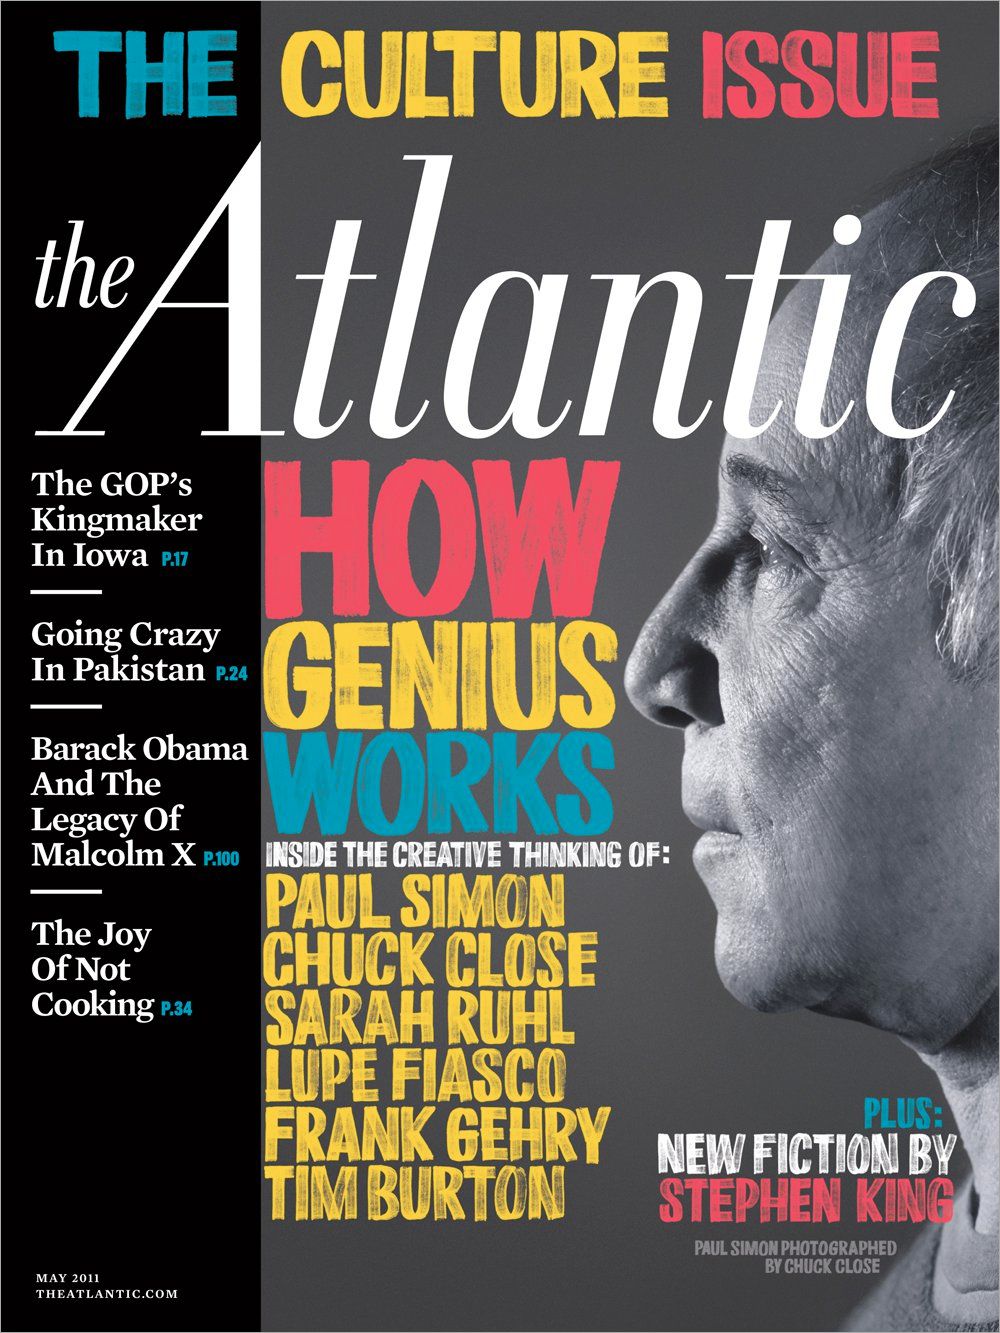 The Atlantic Magazine